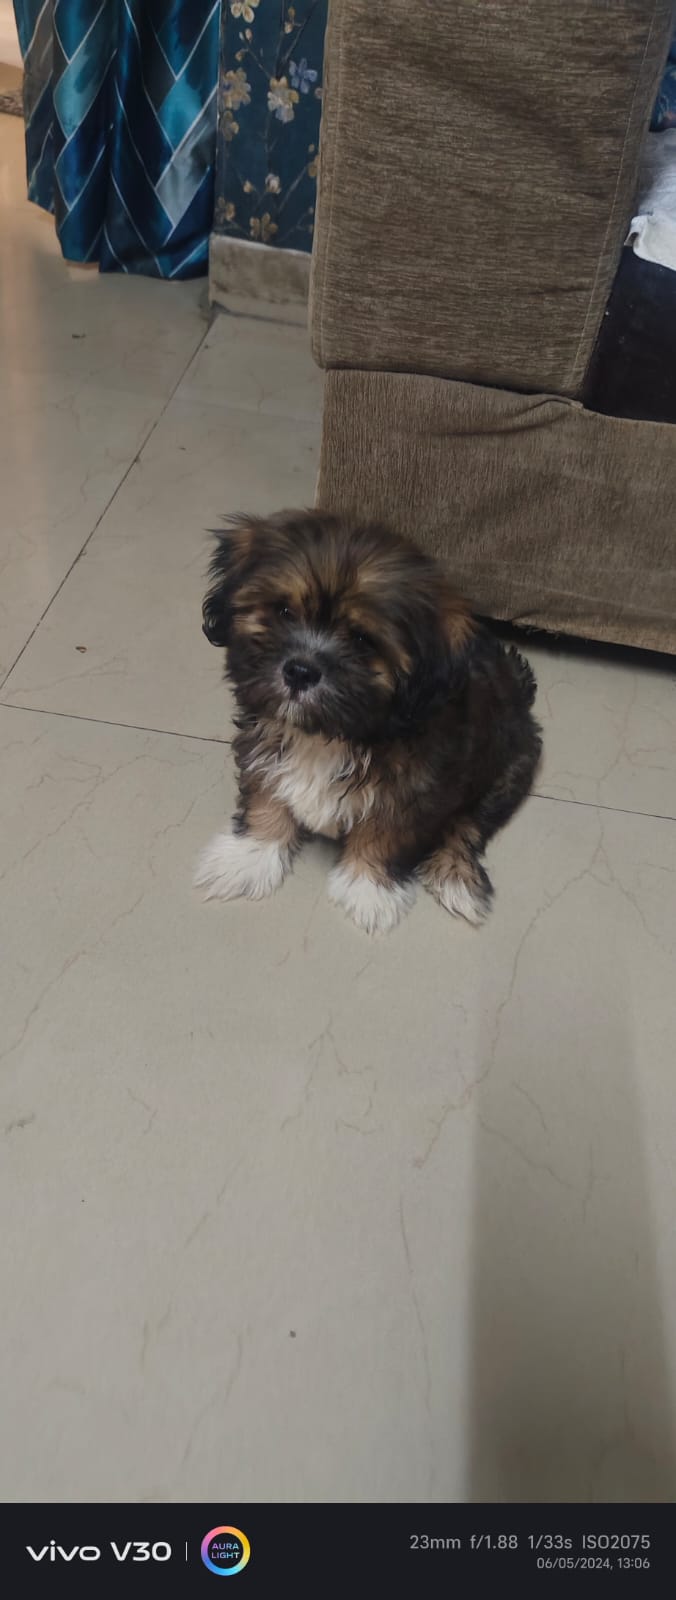 Bruno the puppy